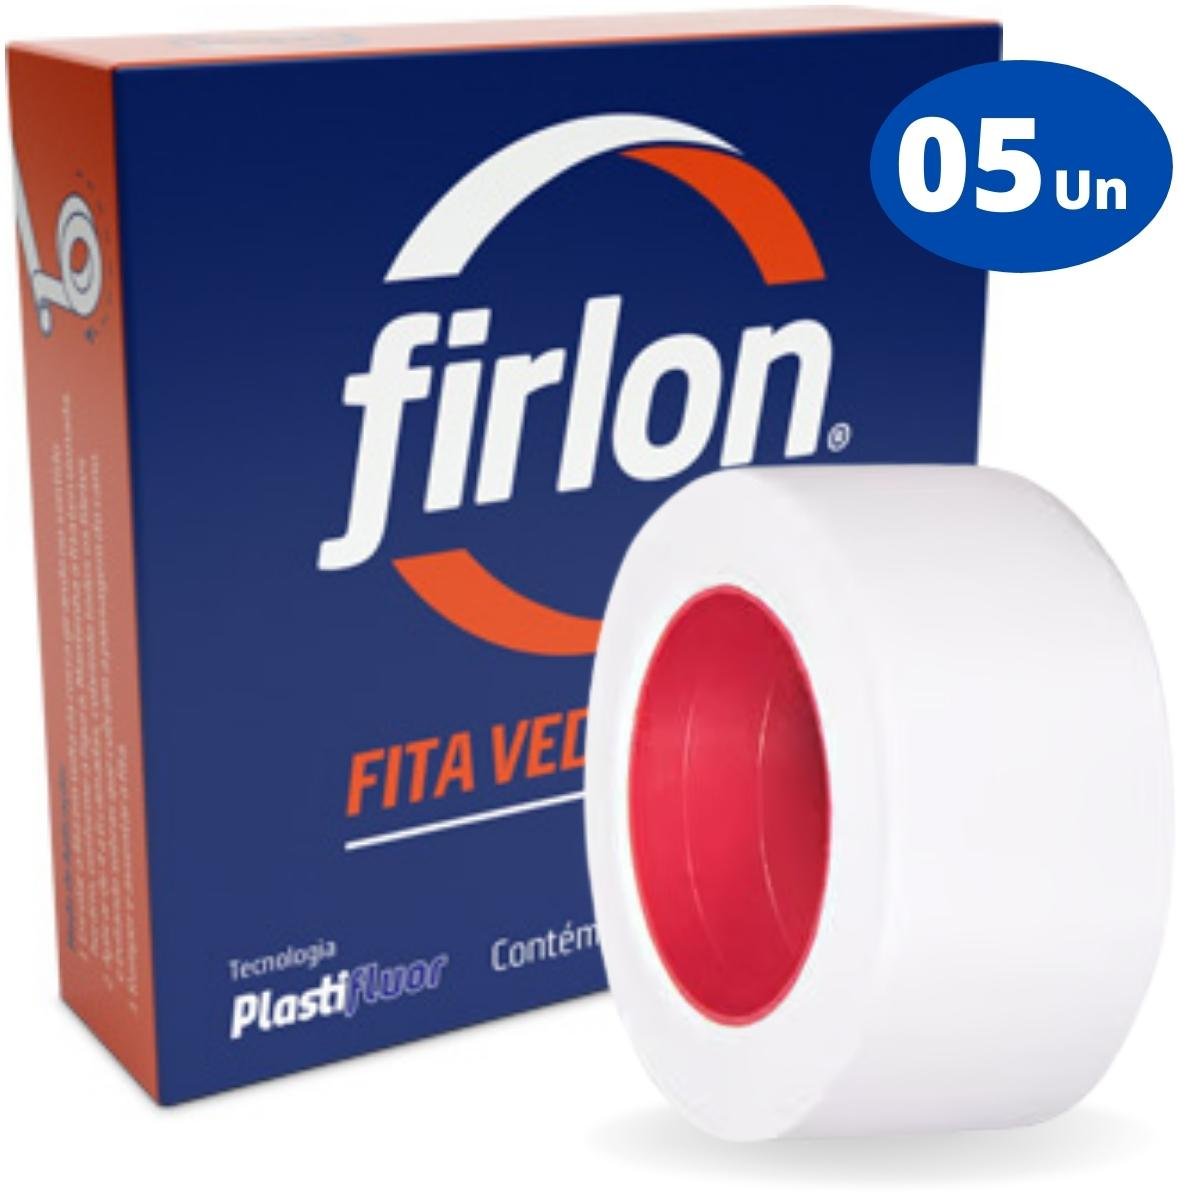 Fita Veda Rosca Teflon 18mm x 10m | Firlon | Kit 05 Un - 1